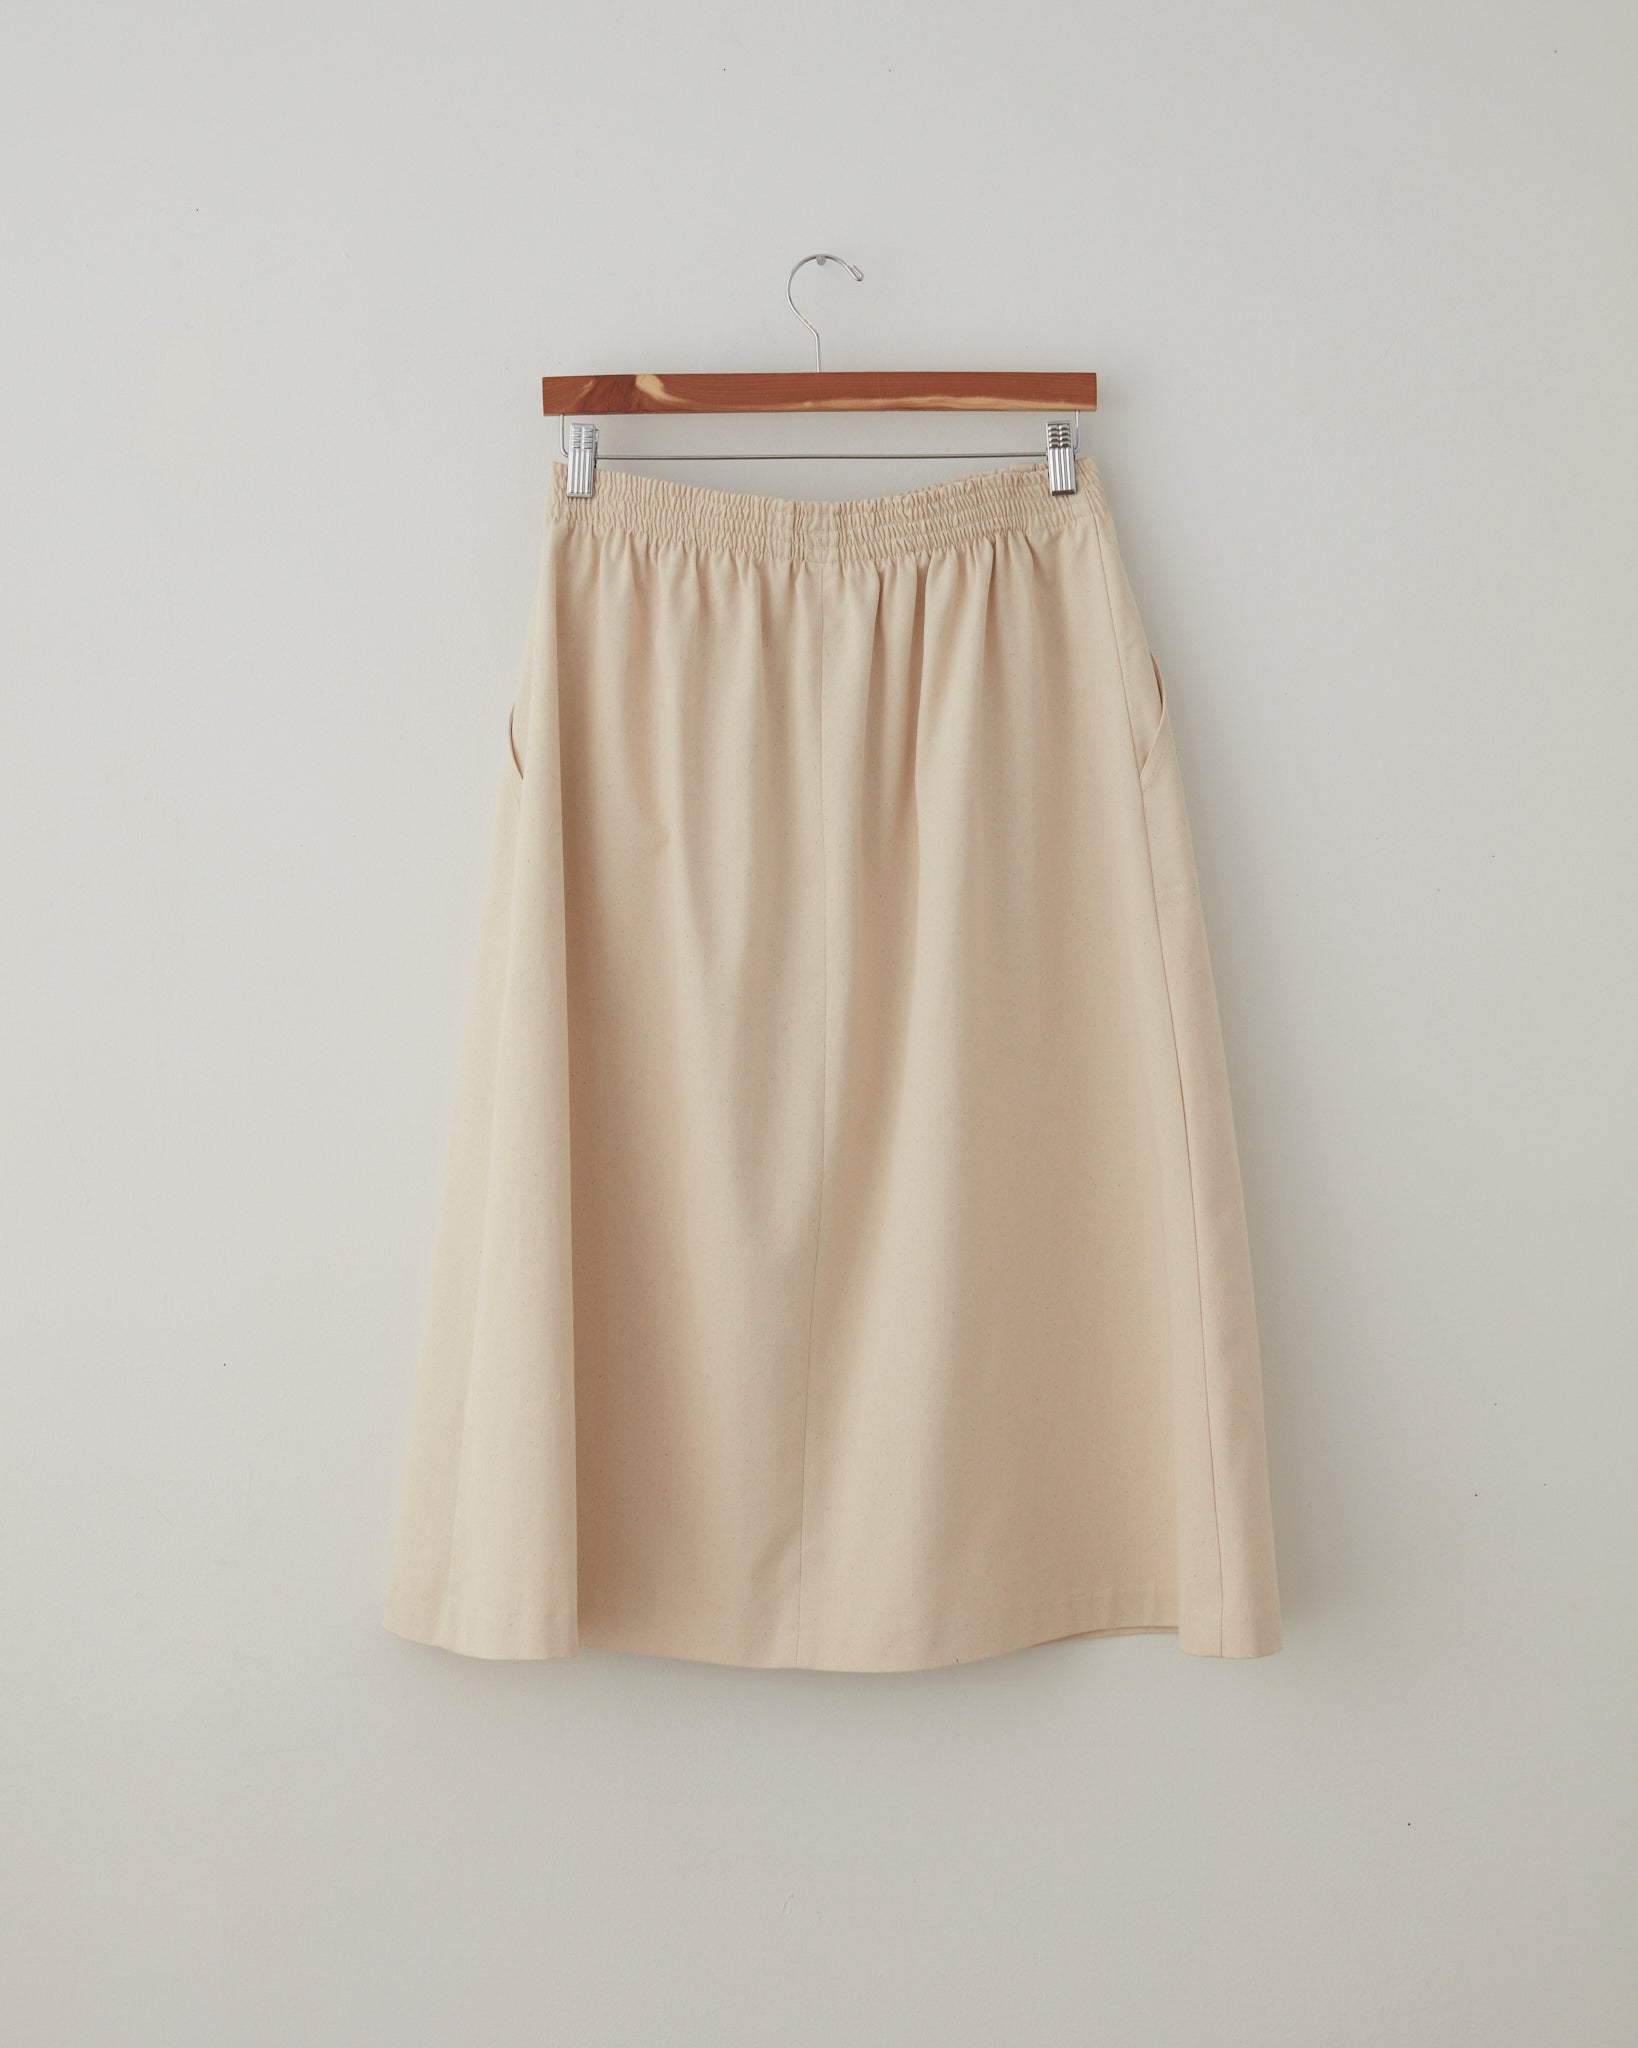 A Skirt